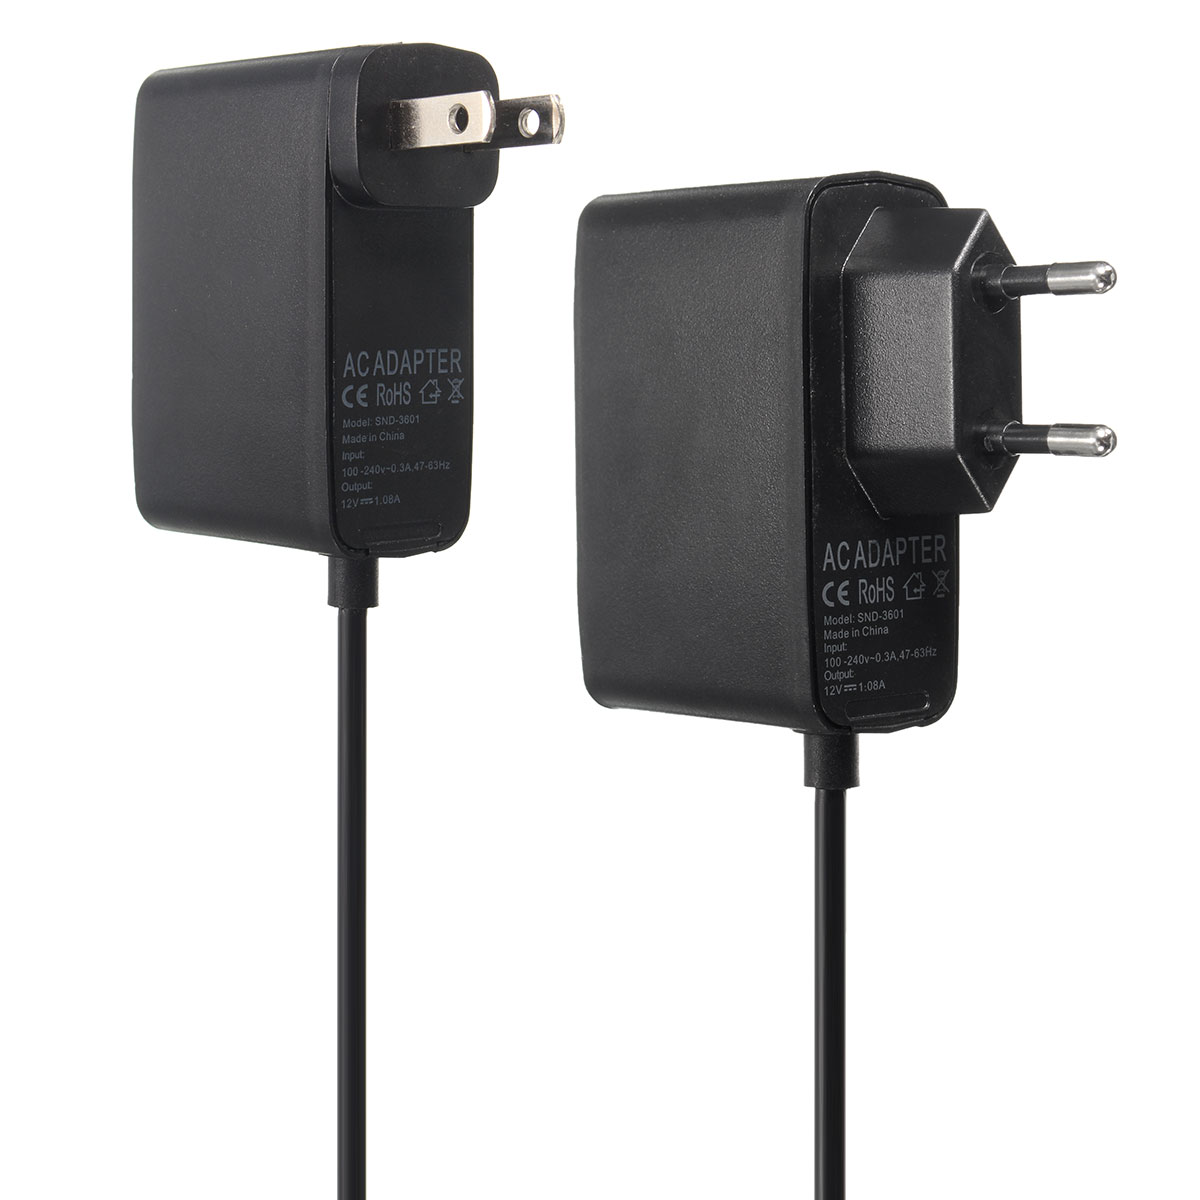 2.3m USB AC Adapter Power Supply Cable for Xbox 360 Kinect Sensor EU/US Plug 21